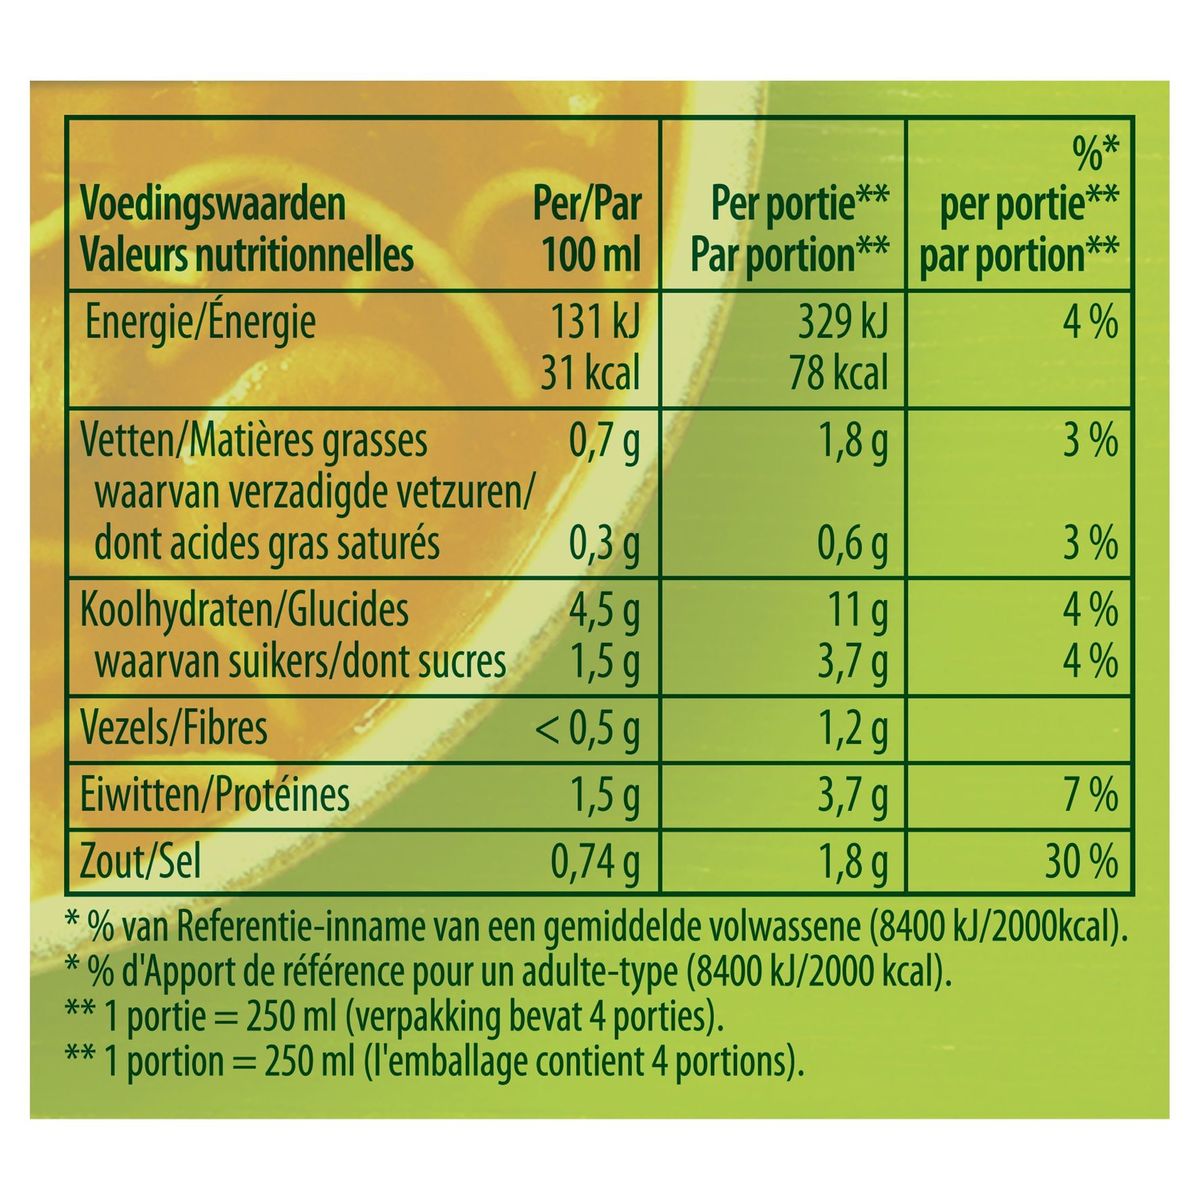 Knorr Soupe en Brique Julienne Tomates- Légumes avec Boulettes 1 L